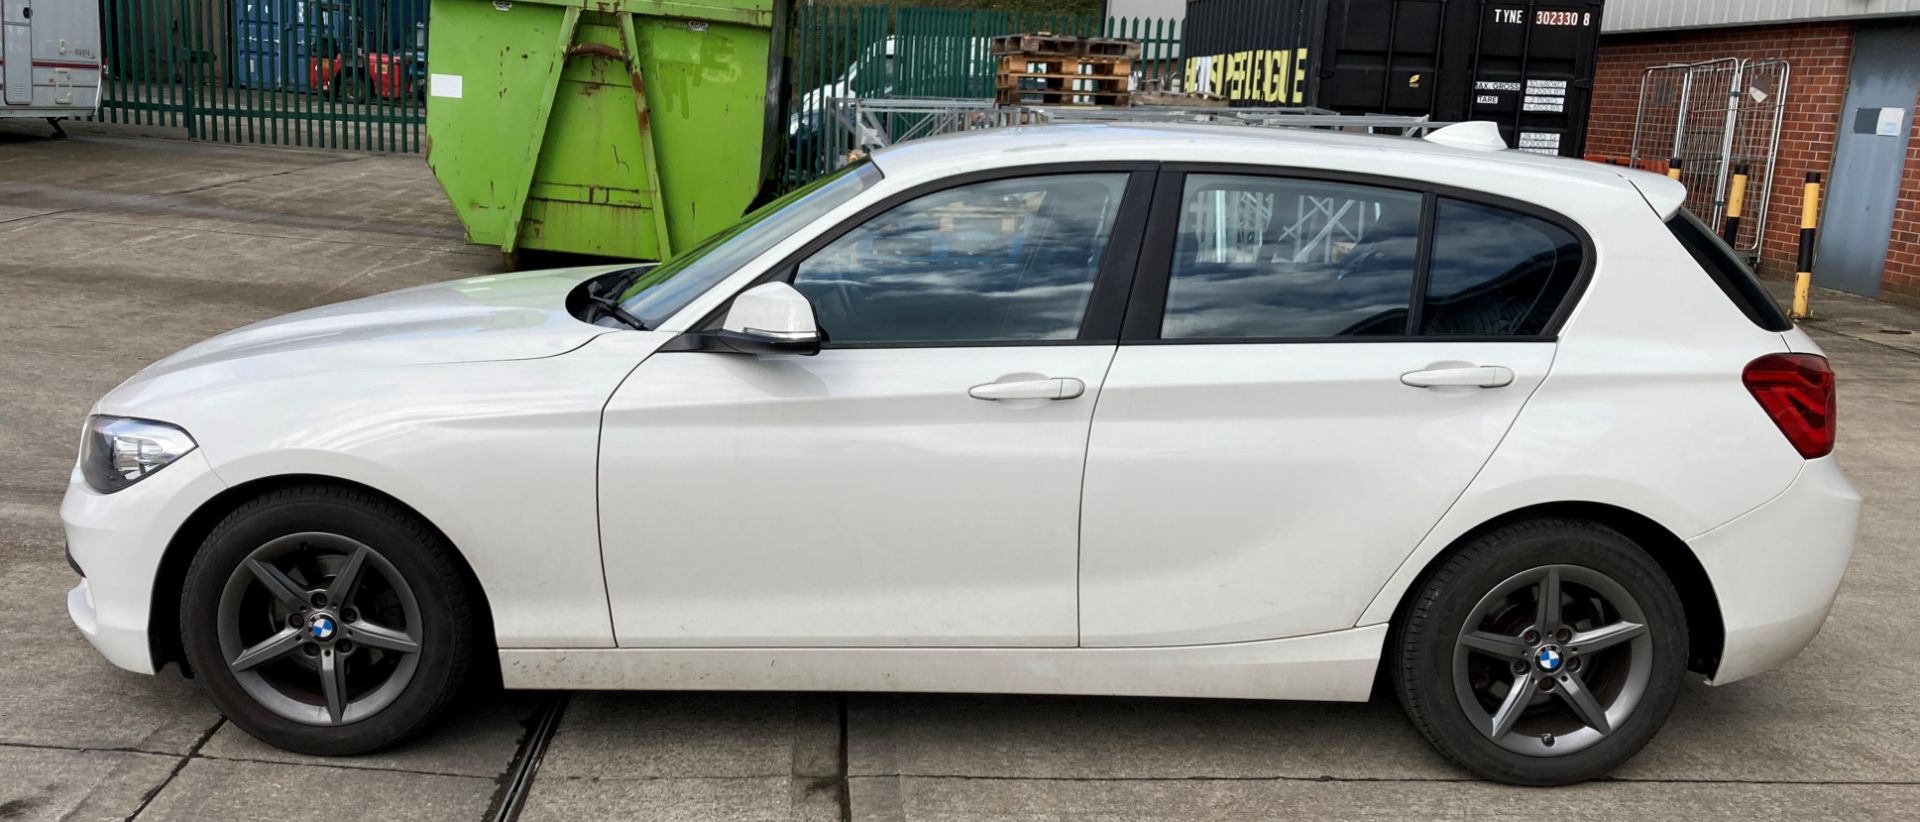 BMW 116d five door hatchback - diesel - white - dark grey cloth interior, with alloy wheels. - Image 3 of 11